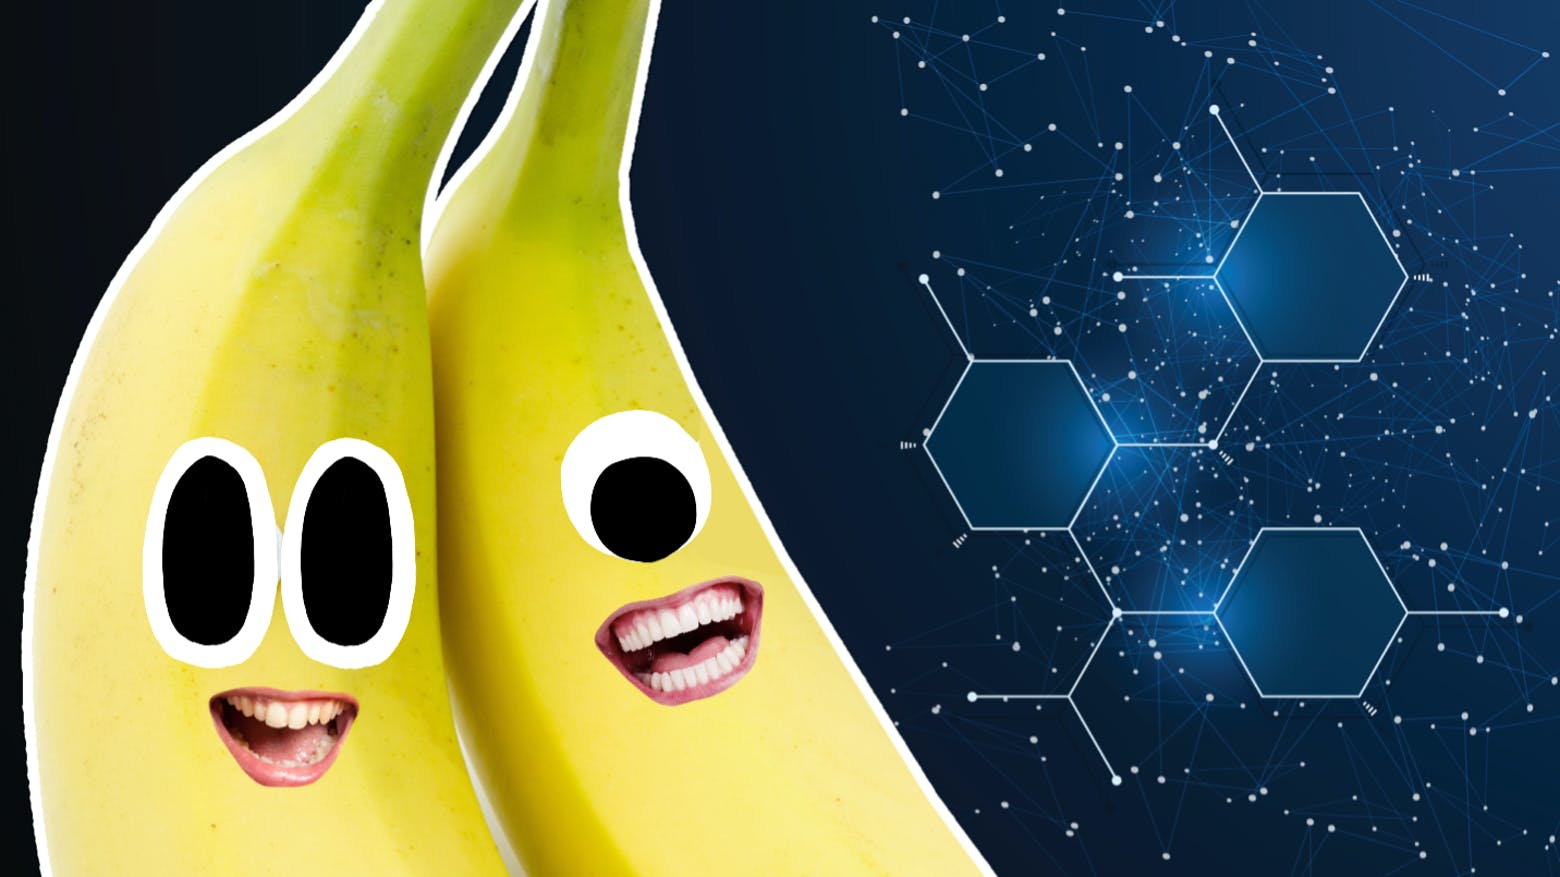 Scientific bananas